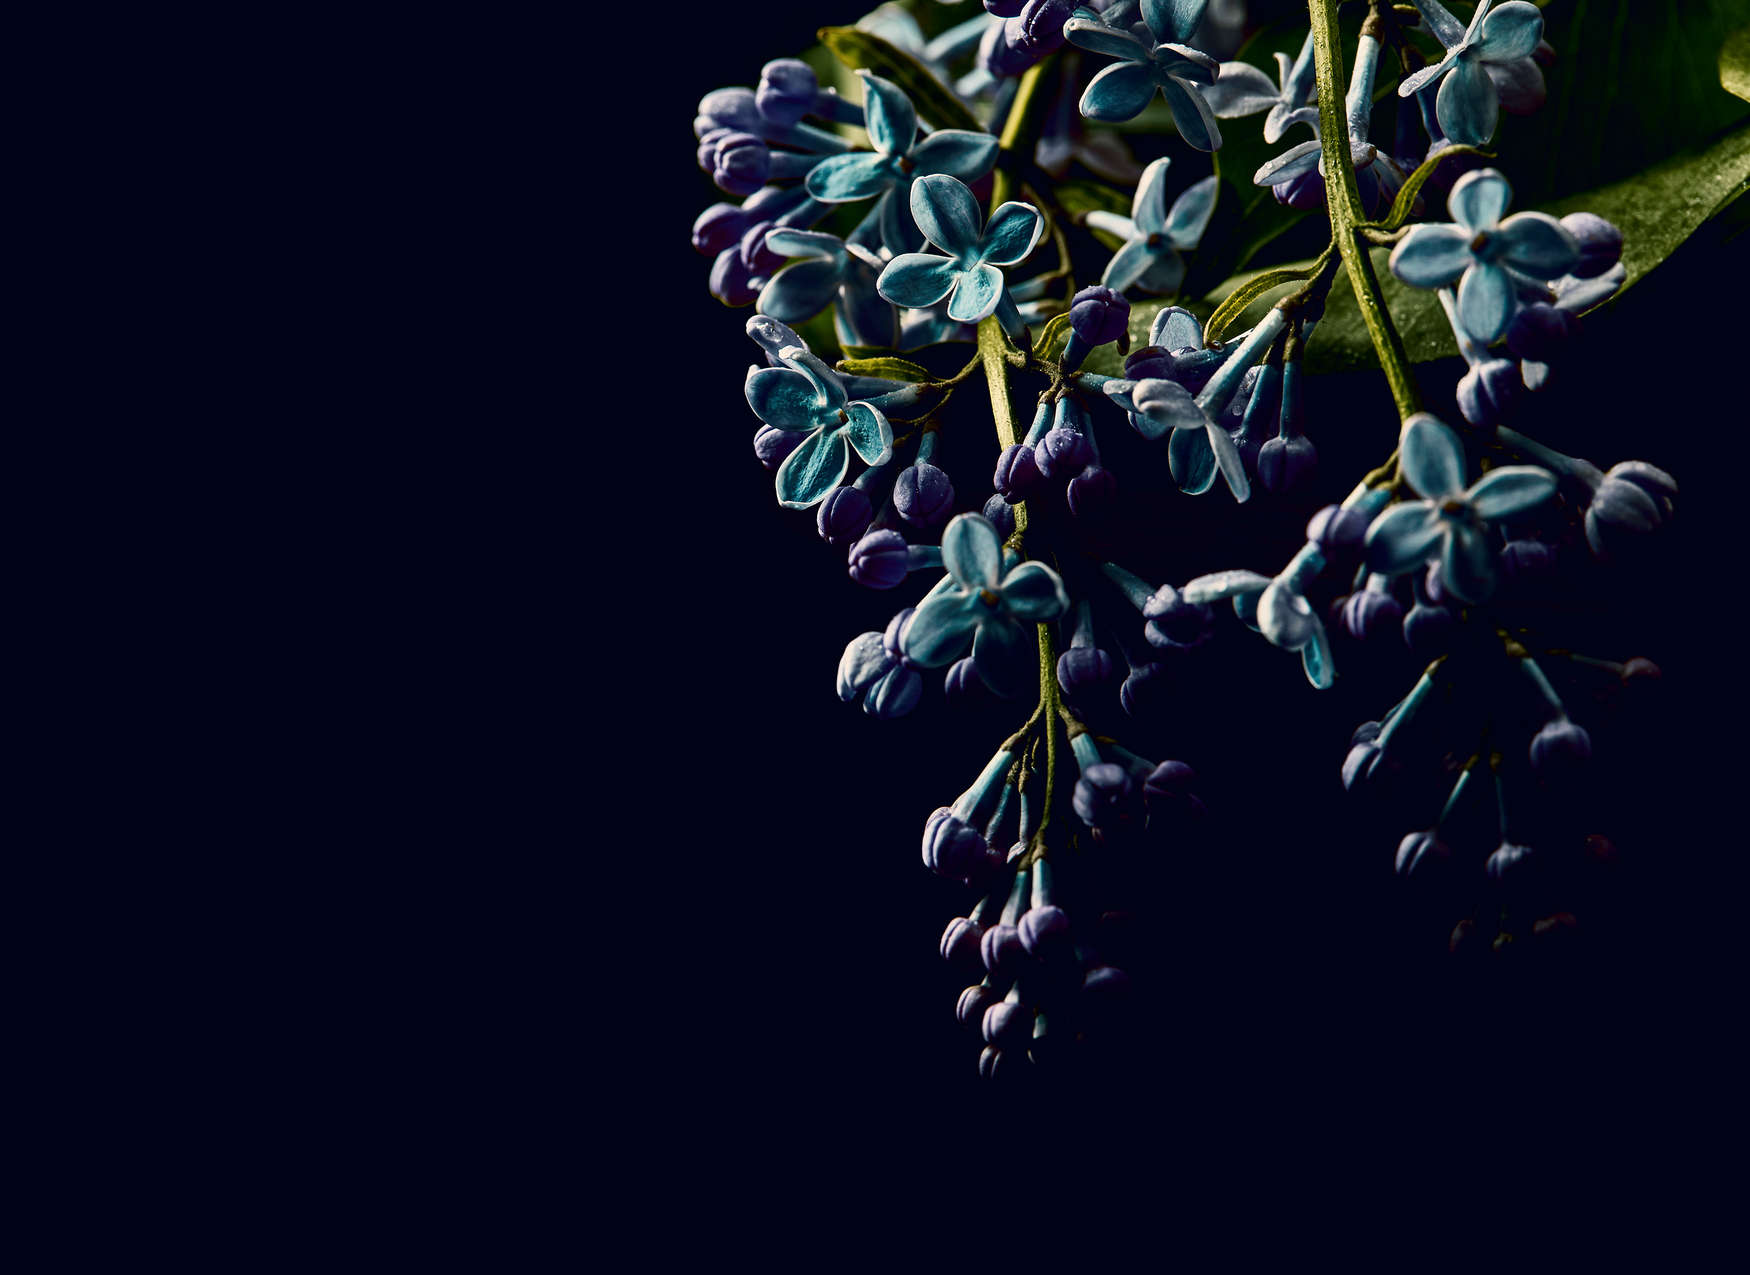             Fotomurali Fiori su sfondo nero Primo Piano - Blu, verde, nero
        